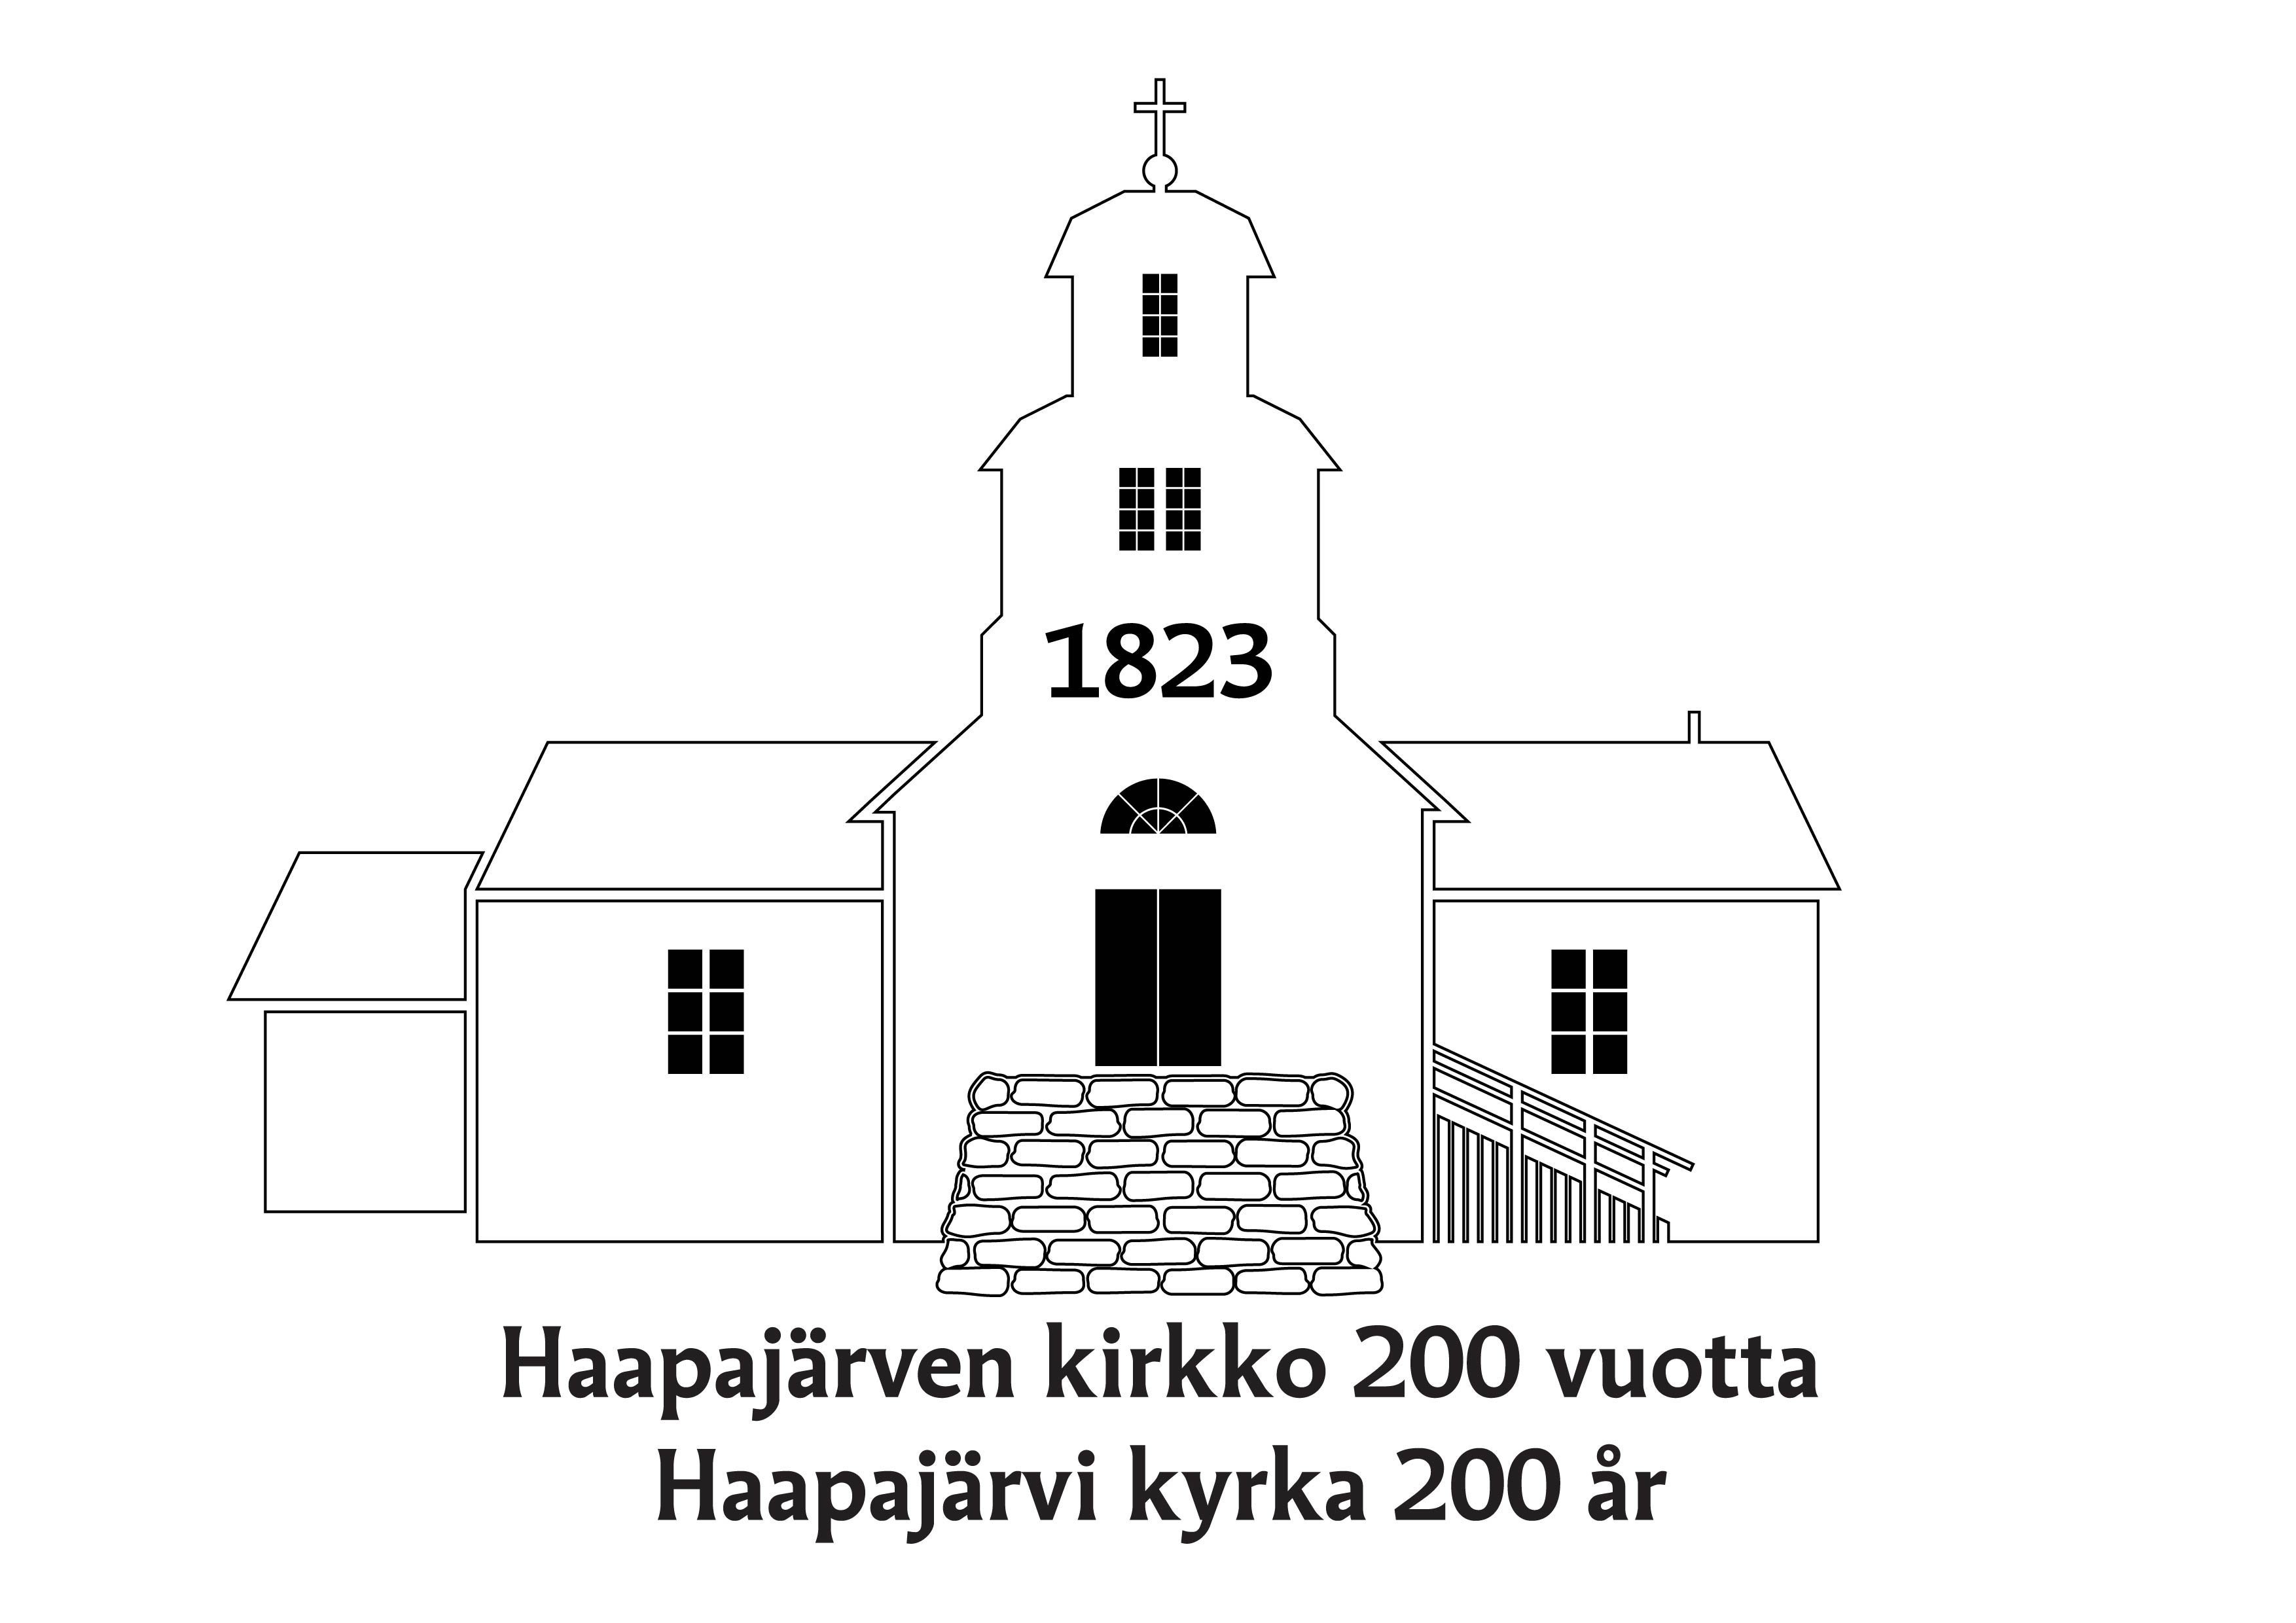 Haapajärven kirkon juhlavuoden logo.